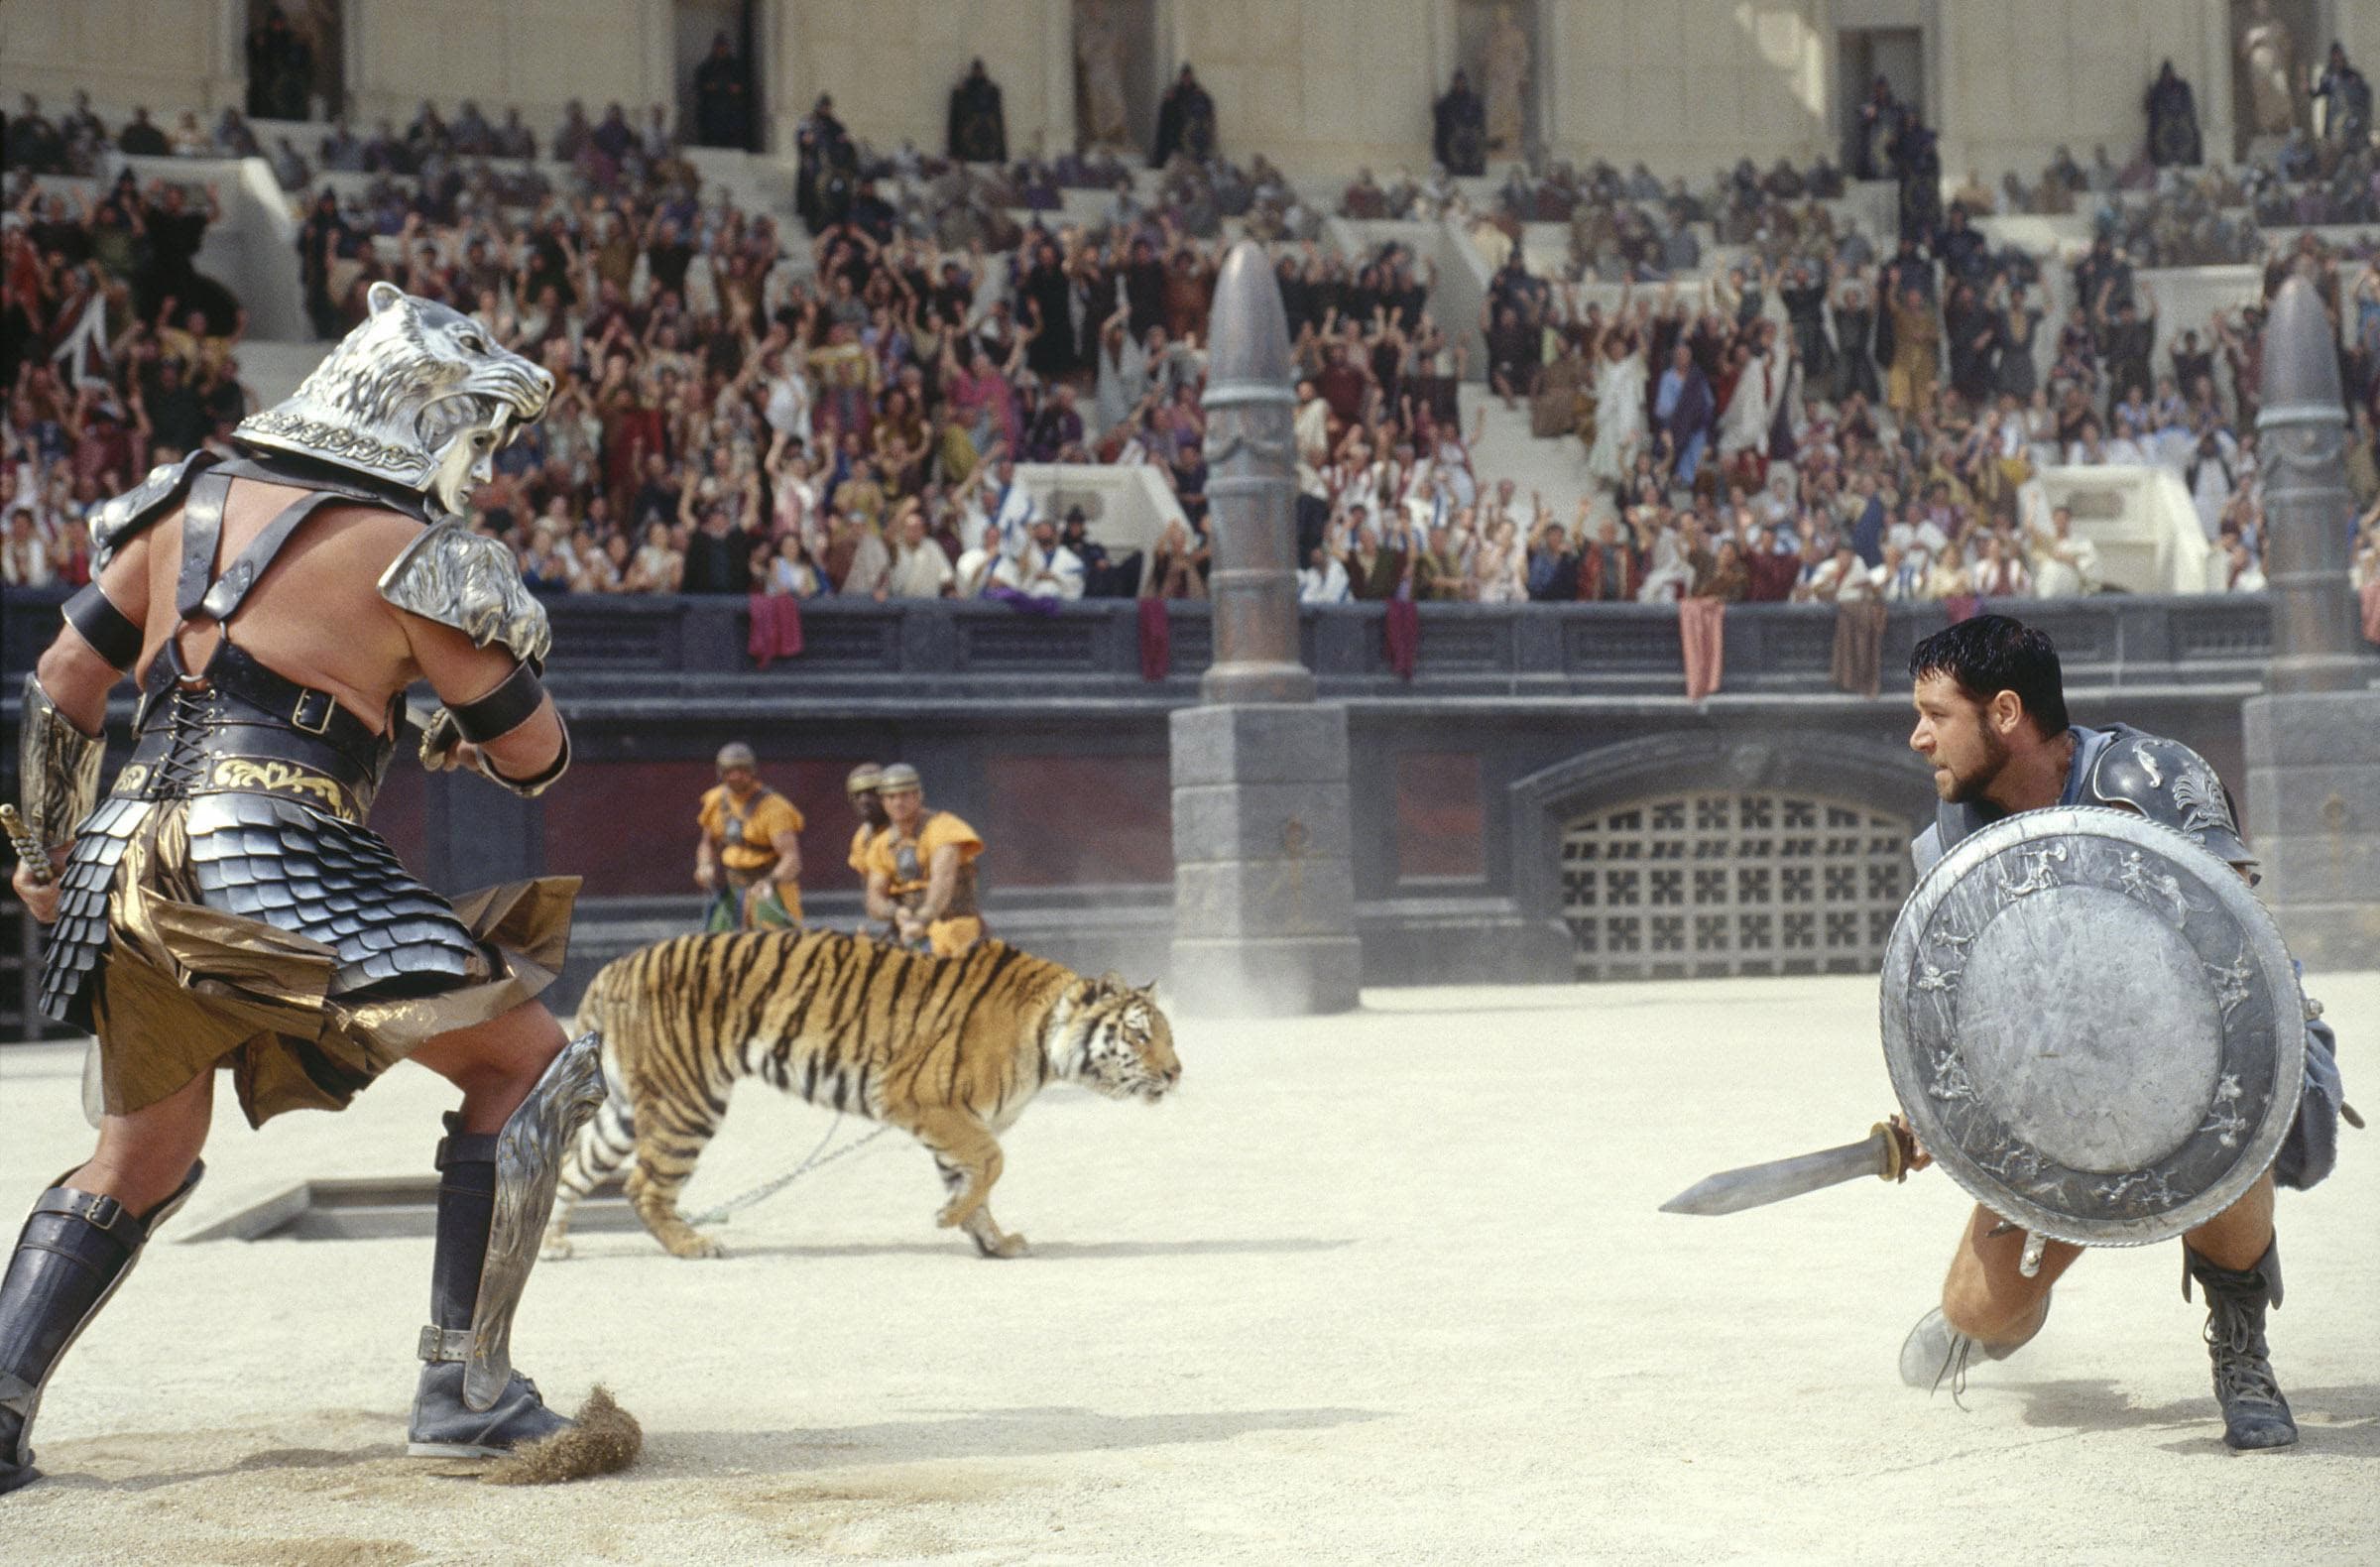 Il gladiatore del 2000 non fu girato nel Colosseo che era in restauro ma le scenografie lo ricostruirono